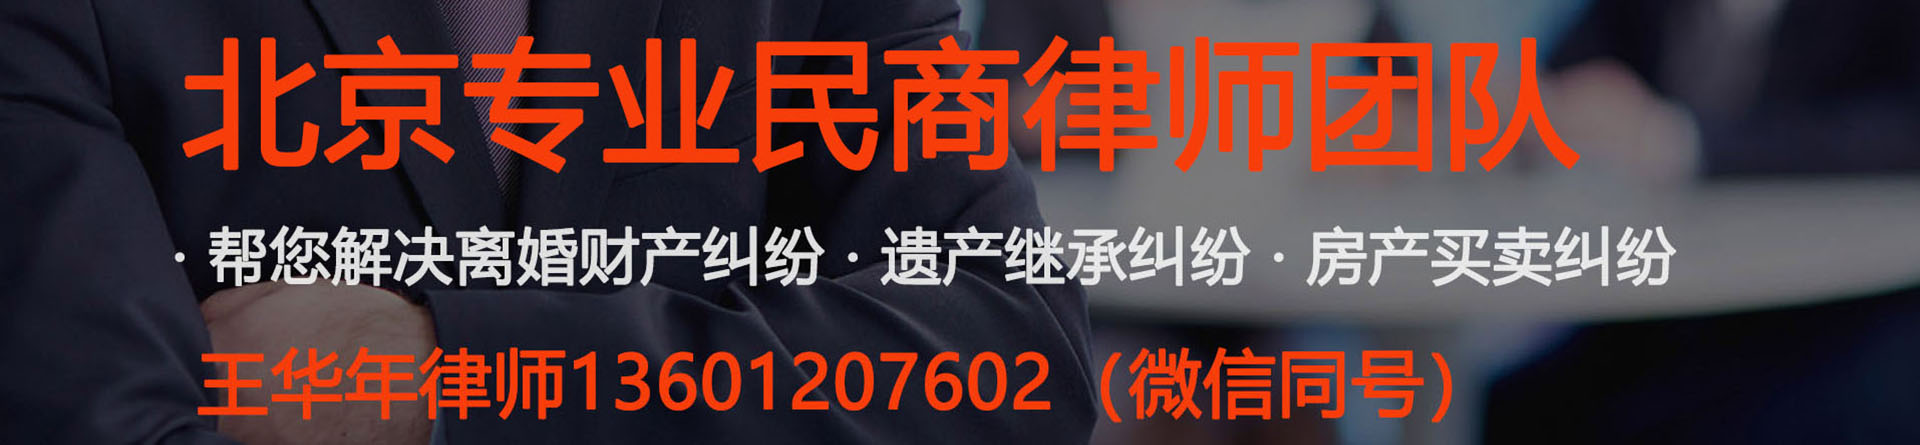 西红门律师事务所免费咨询-北京大兴西红门附近的律师事务所地址电话